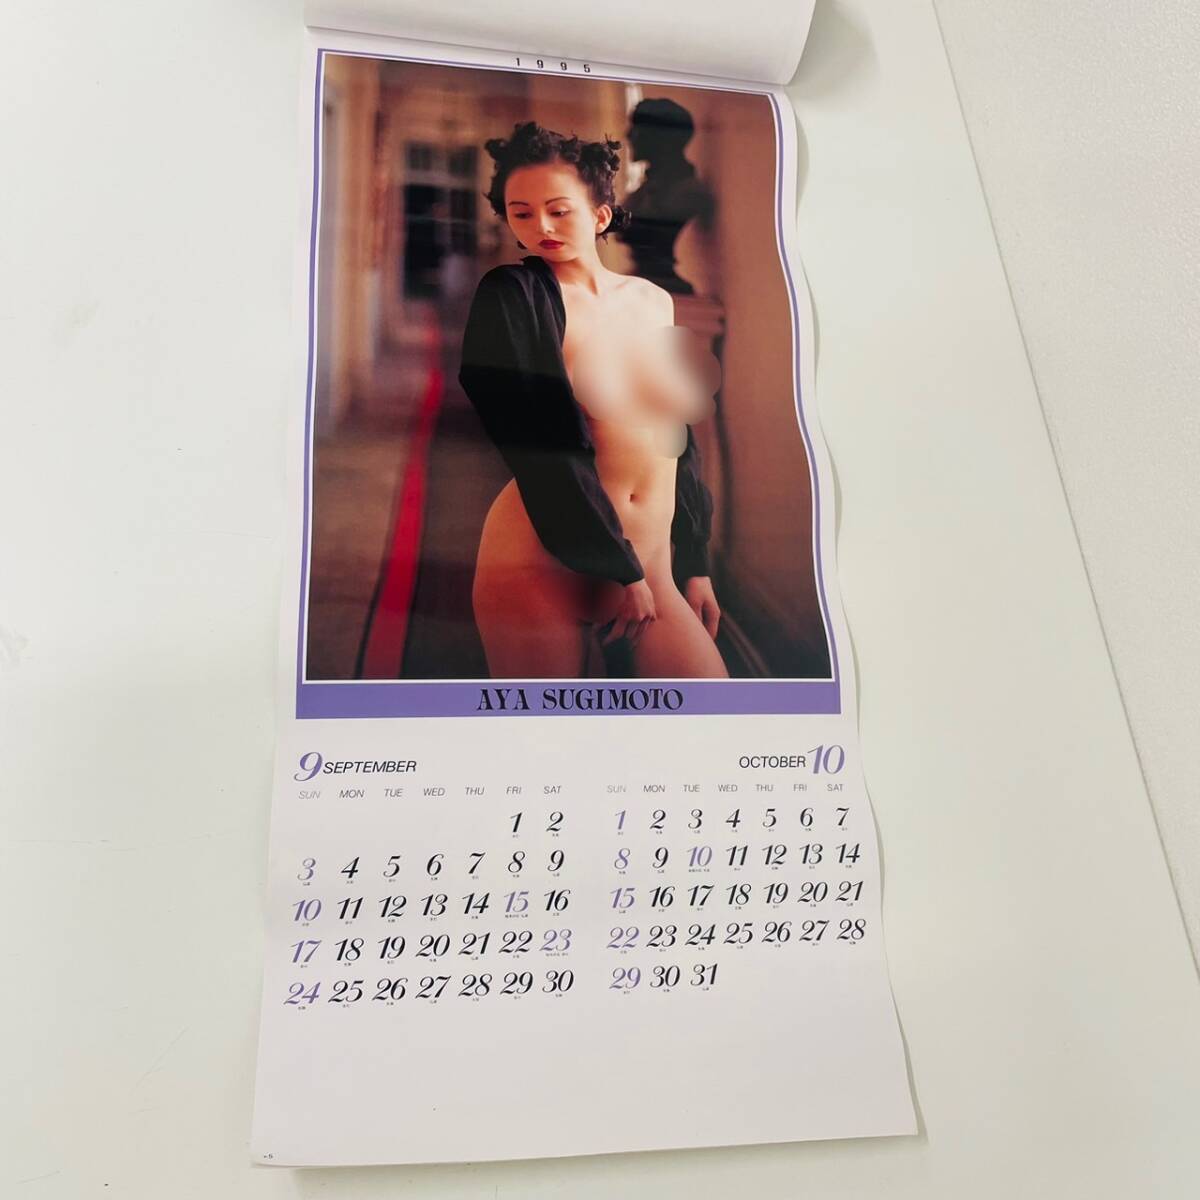 AYA SUGIMOTO Sugimoto Aya календарь 1995 не использовался хранение товар фотография большой размер календарь [0418-C]